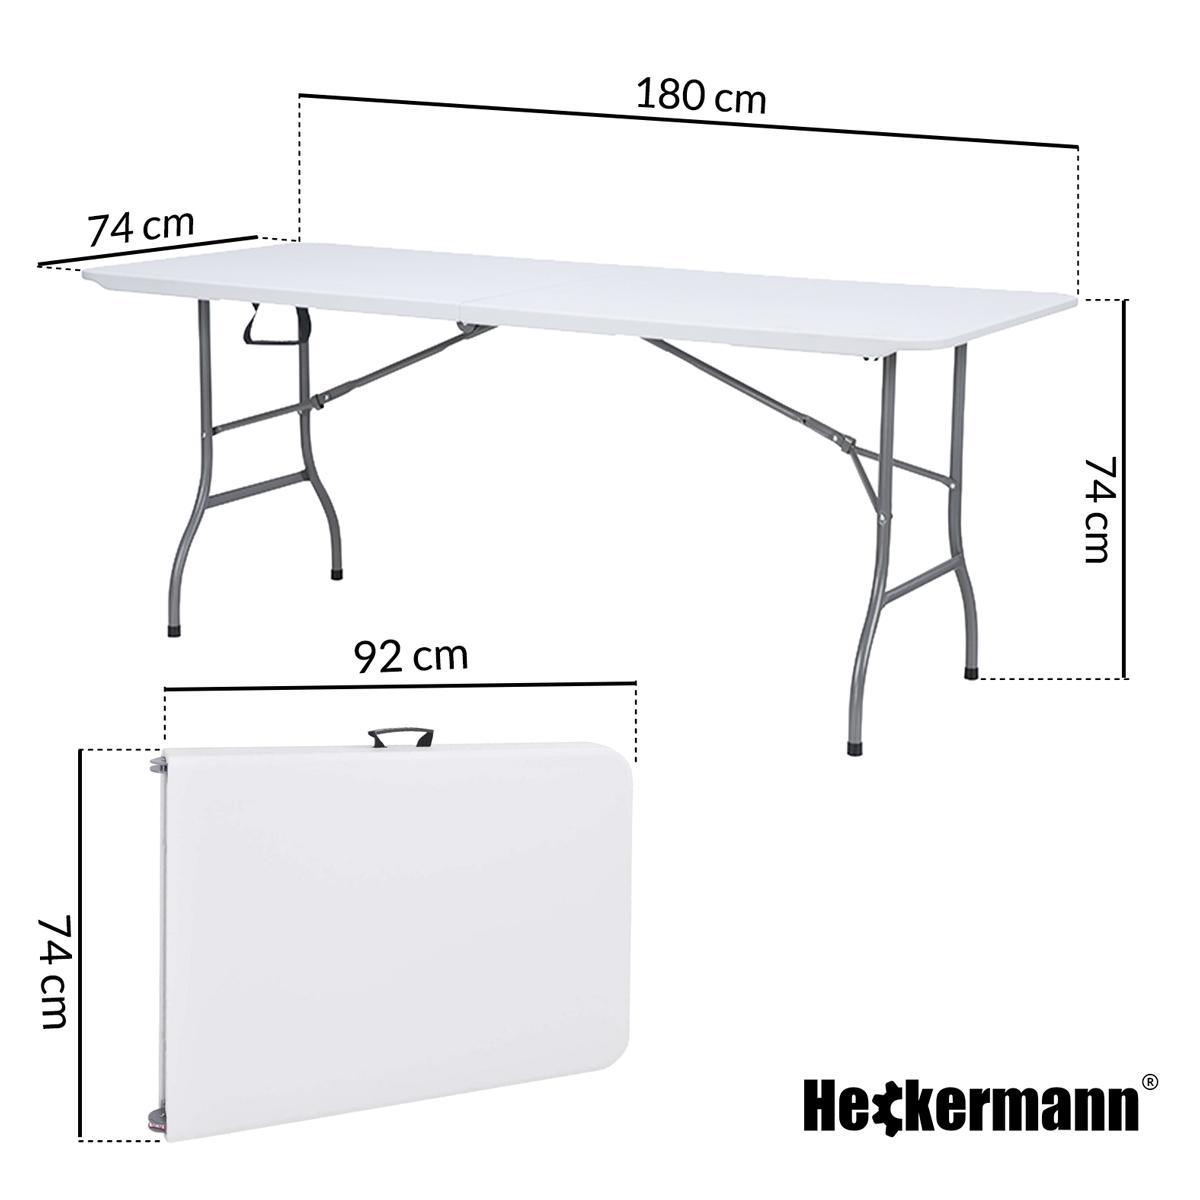 Stół składany cateringowy 180x74cm Heckermann XJM-Z180 Biały nr. 2